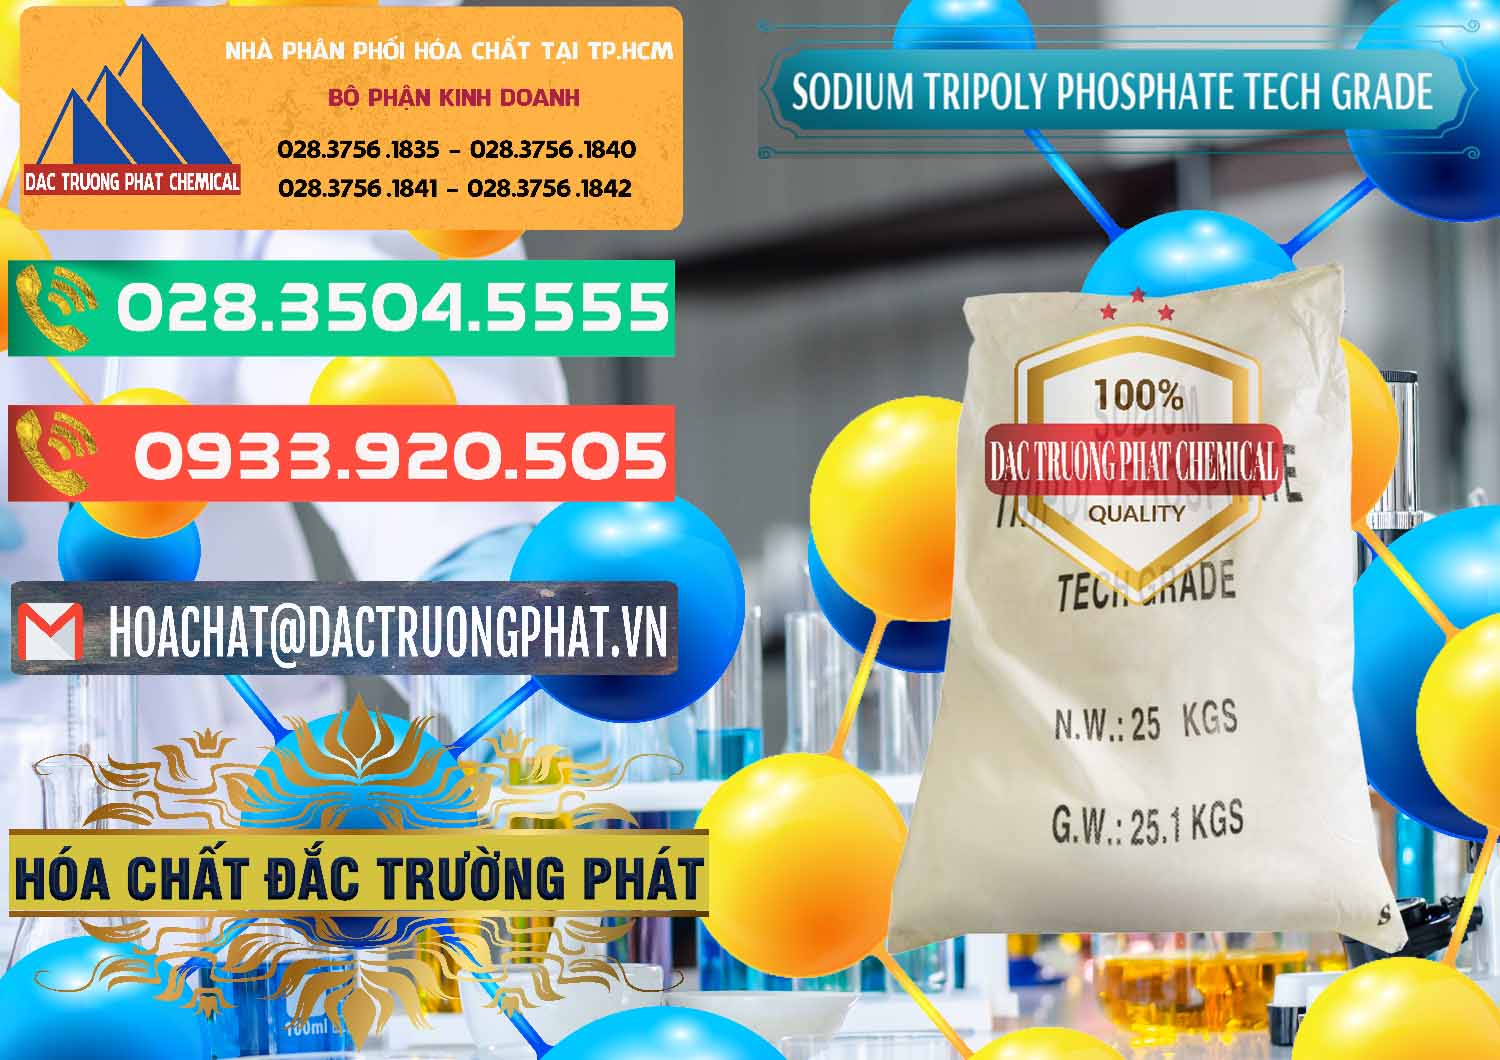 Cty chuyên phân phối - bán Sodium Tripoly Phosphate - STPP Tech Grade Trung Quốc China - 0453 - Đơn vị chuyên cung cấp - nhập khẩu hóa chất tại TP.HCM - congtyhoachat.com.vn